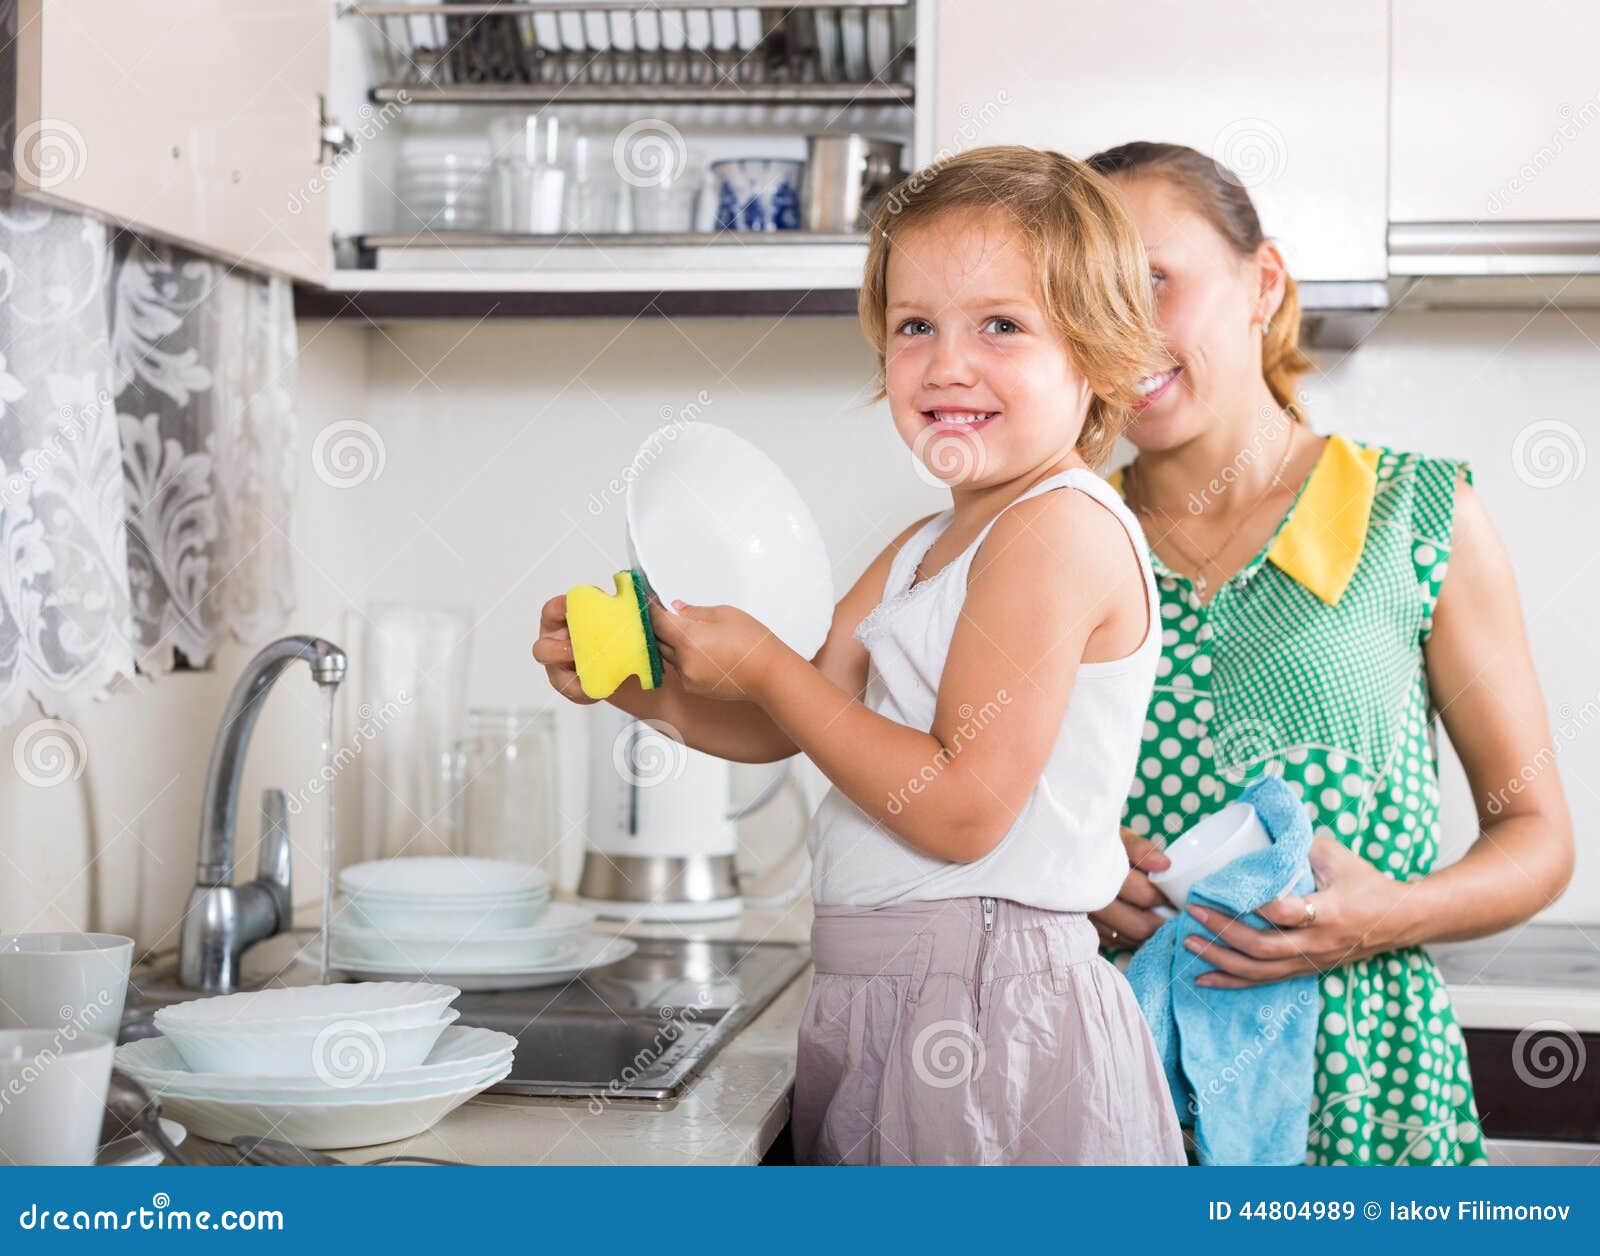 Семья моет посуду. Помогать маме по дому. Мама с дочкой моют посуду. Посуда для девочек. Девочка помогает маме мыть посуду.